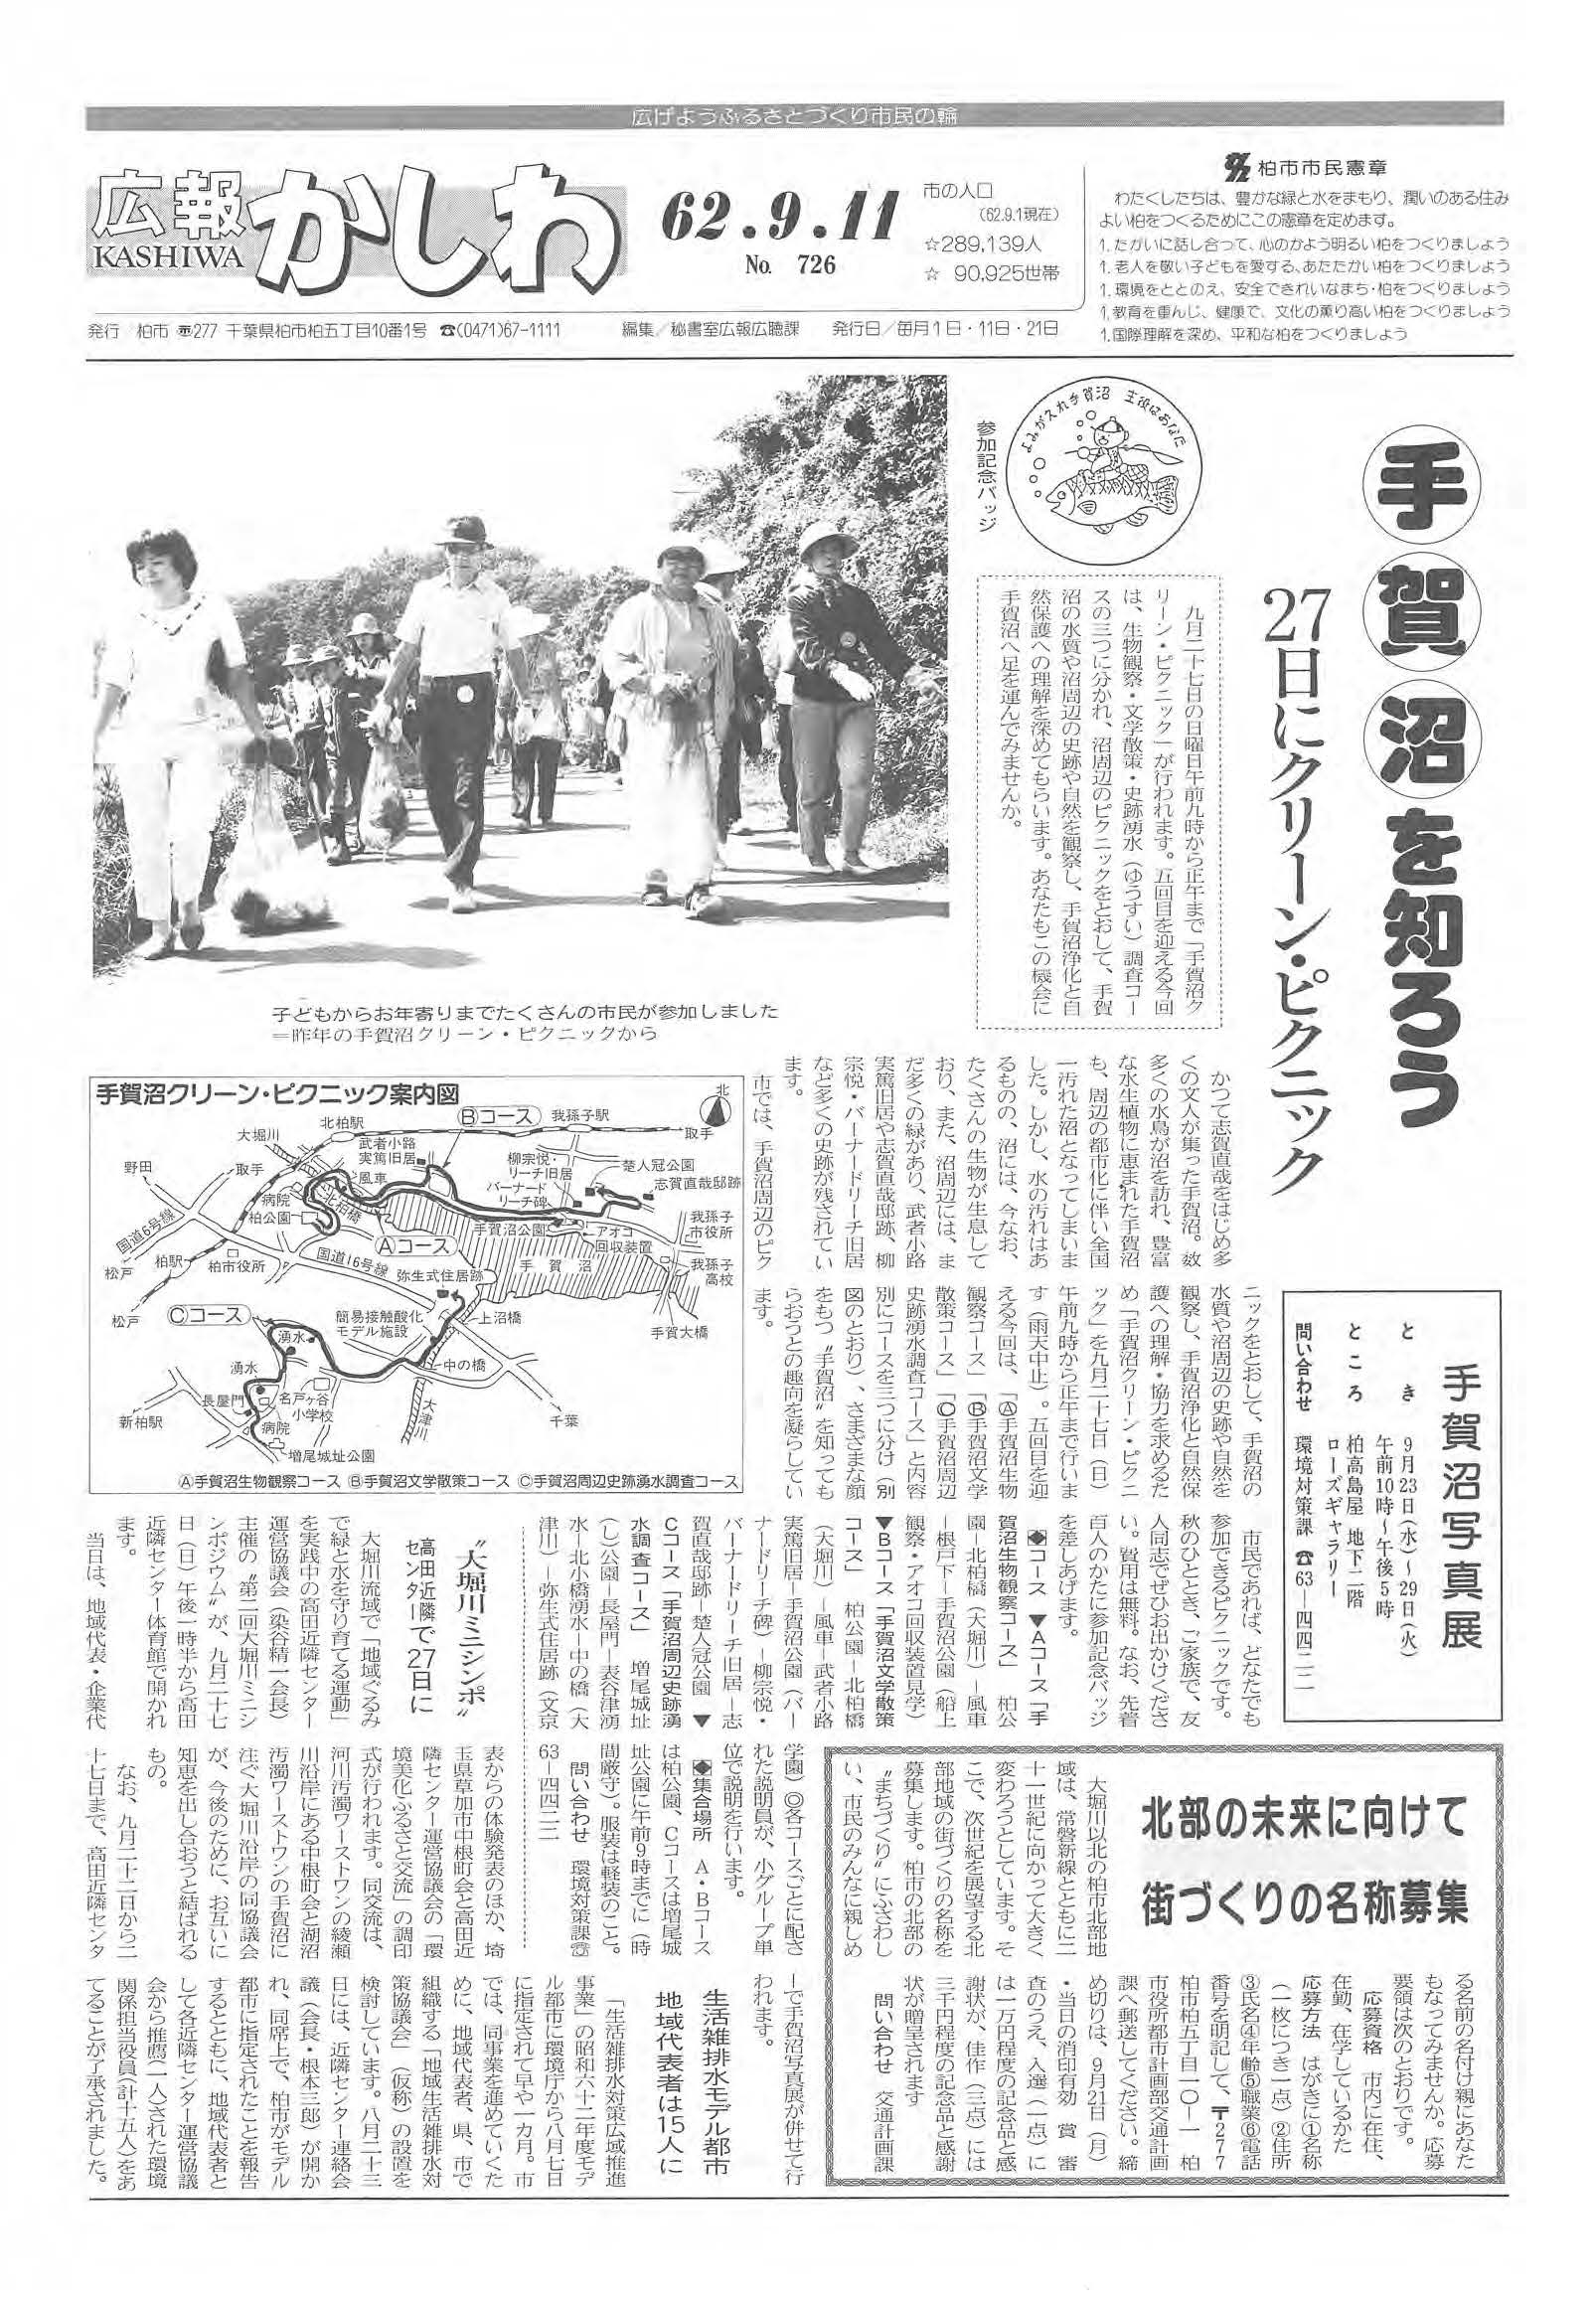 広報かしわ　昭和62年9月11日発行　726号